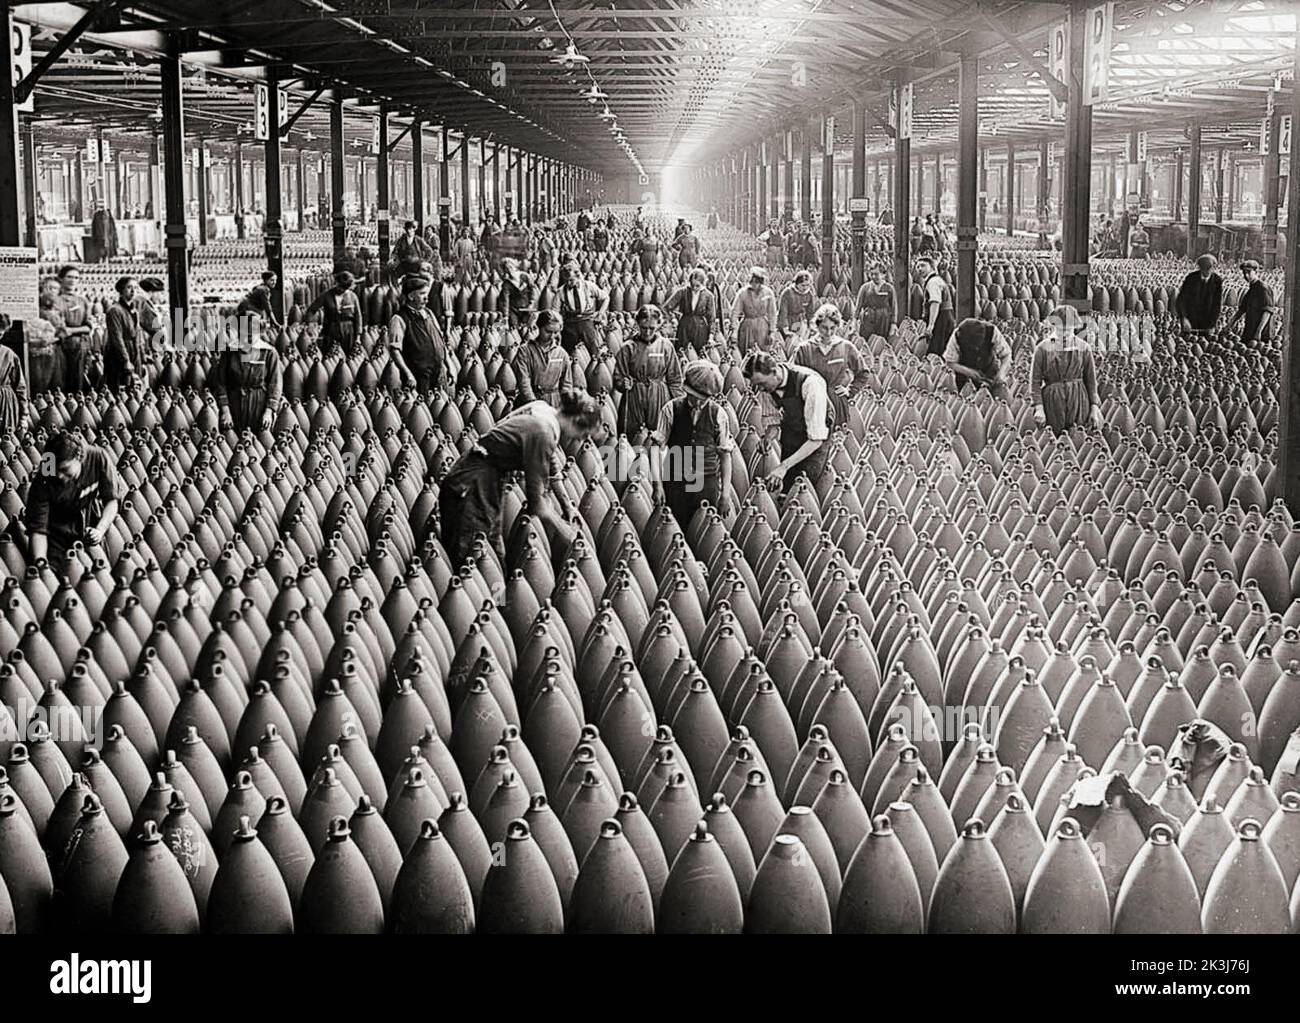 Fabbrica nazionale di riempimento a Chilwell nel 1917. Durante la prima guerra mondiale, un gran numero di donne sono state reclutate in posti di lavoro vacati da uomini che erano andati a combattere in guerra. L'elevata domanda di armi ha portato le fabbriche di munizioni a diventare il più grande datore di lavoro unico delle donne nel corso del 1918. Nel 1917 le fabbriche di munizioni, che hanno impiegato principalmente lavoratrici, hanno prodotto il 80% delle armi e delle conchiglie utilizzate dall'esercito britannico. Foto Stock